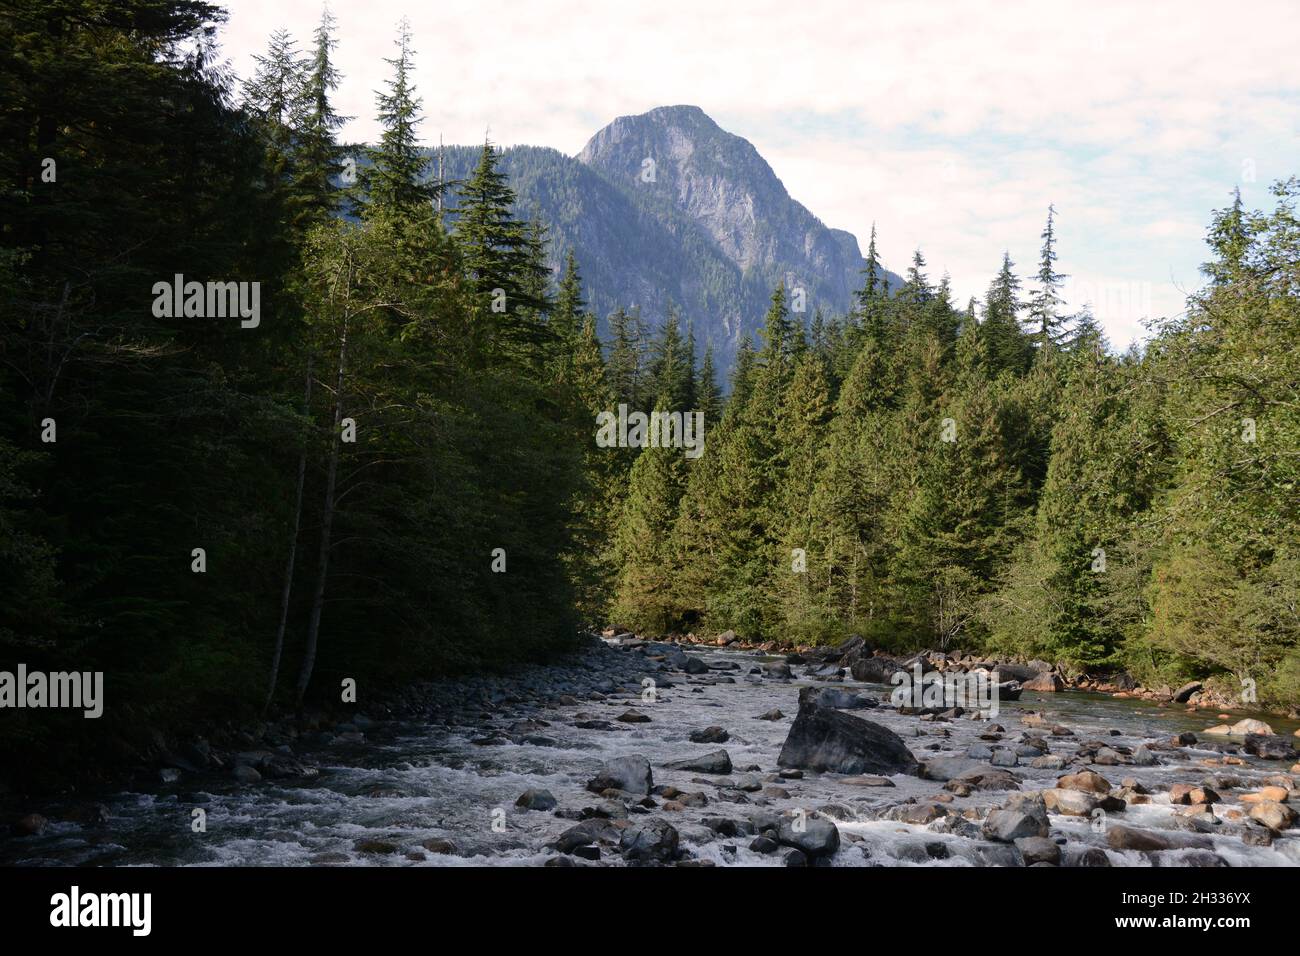 Der Gold Creek River, der gemäßigte Regenwald und die Coast Mountains des Golden Ears Provincial Park, in der Nähe von Maple Ridge, British Columbia, Kanada. Stockfoto